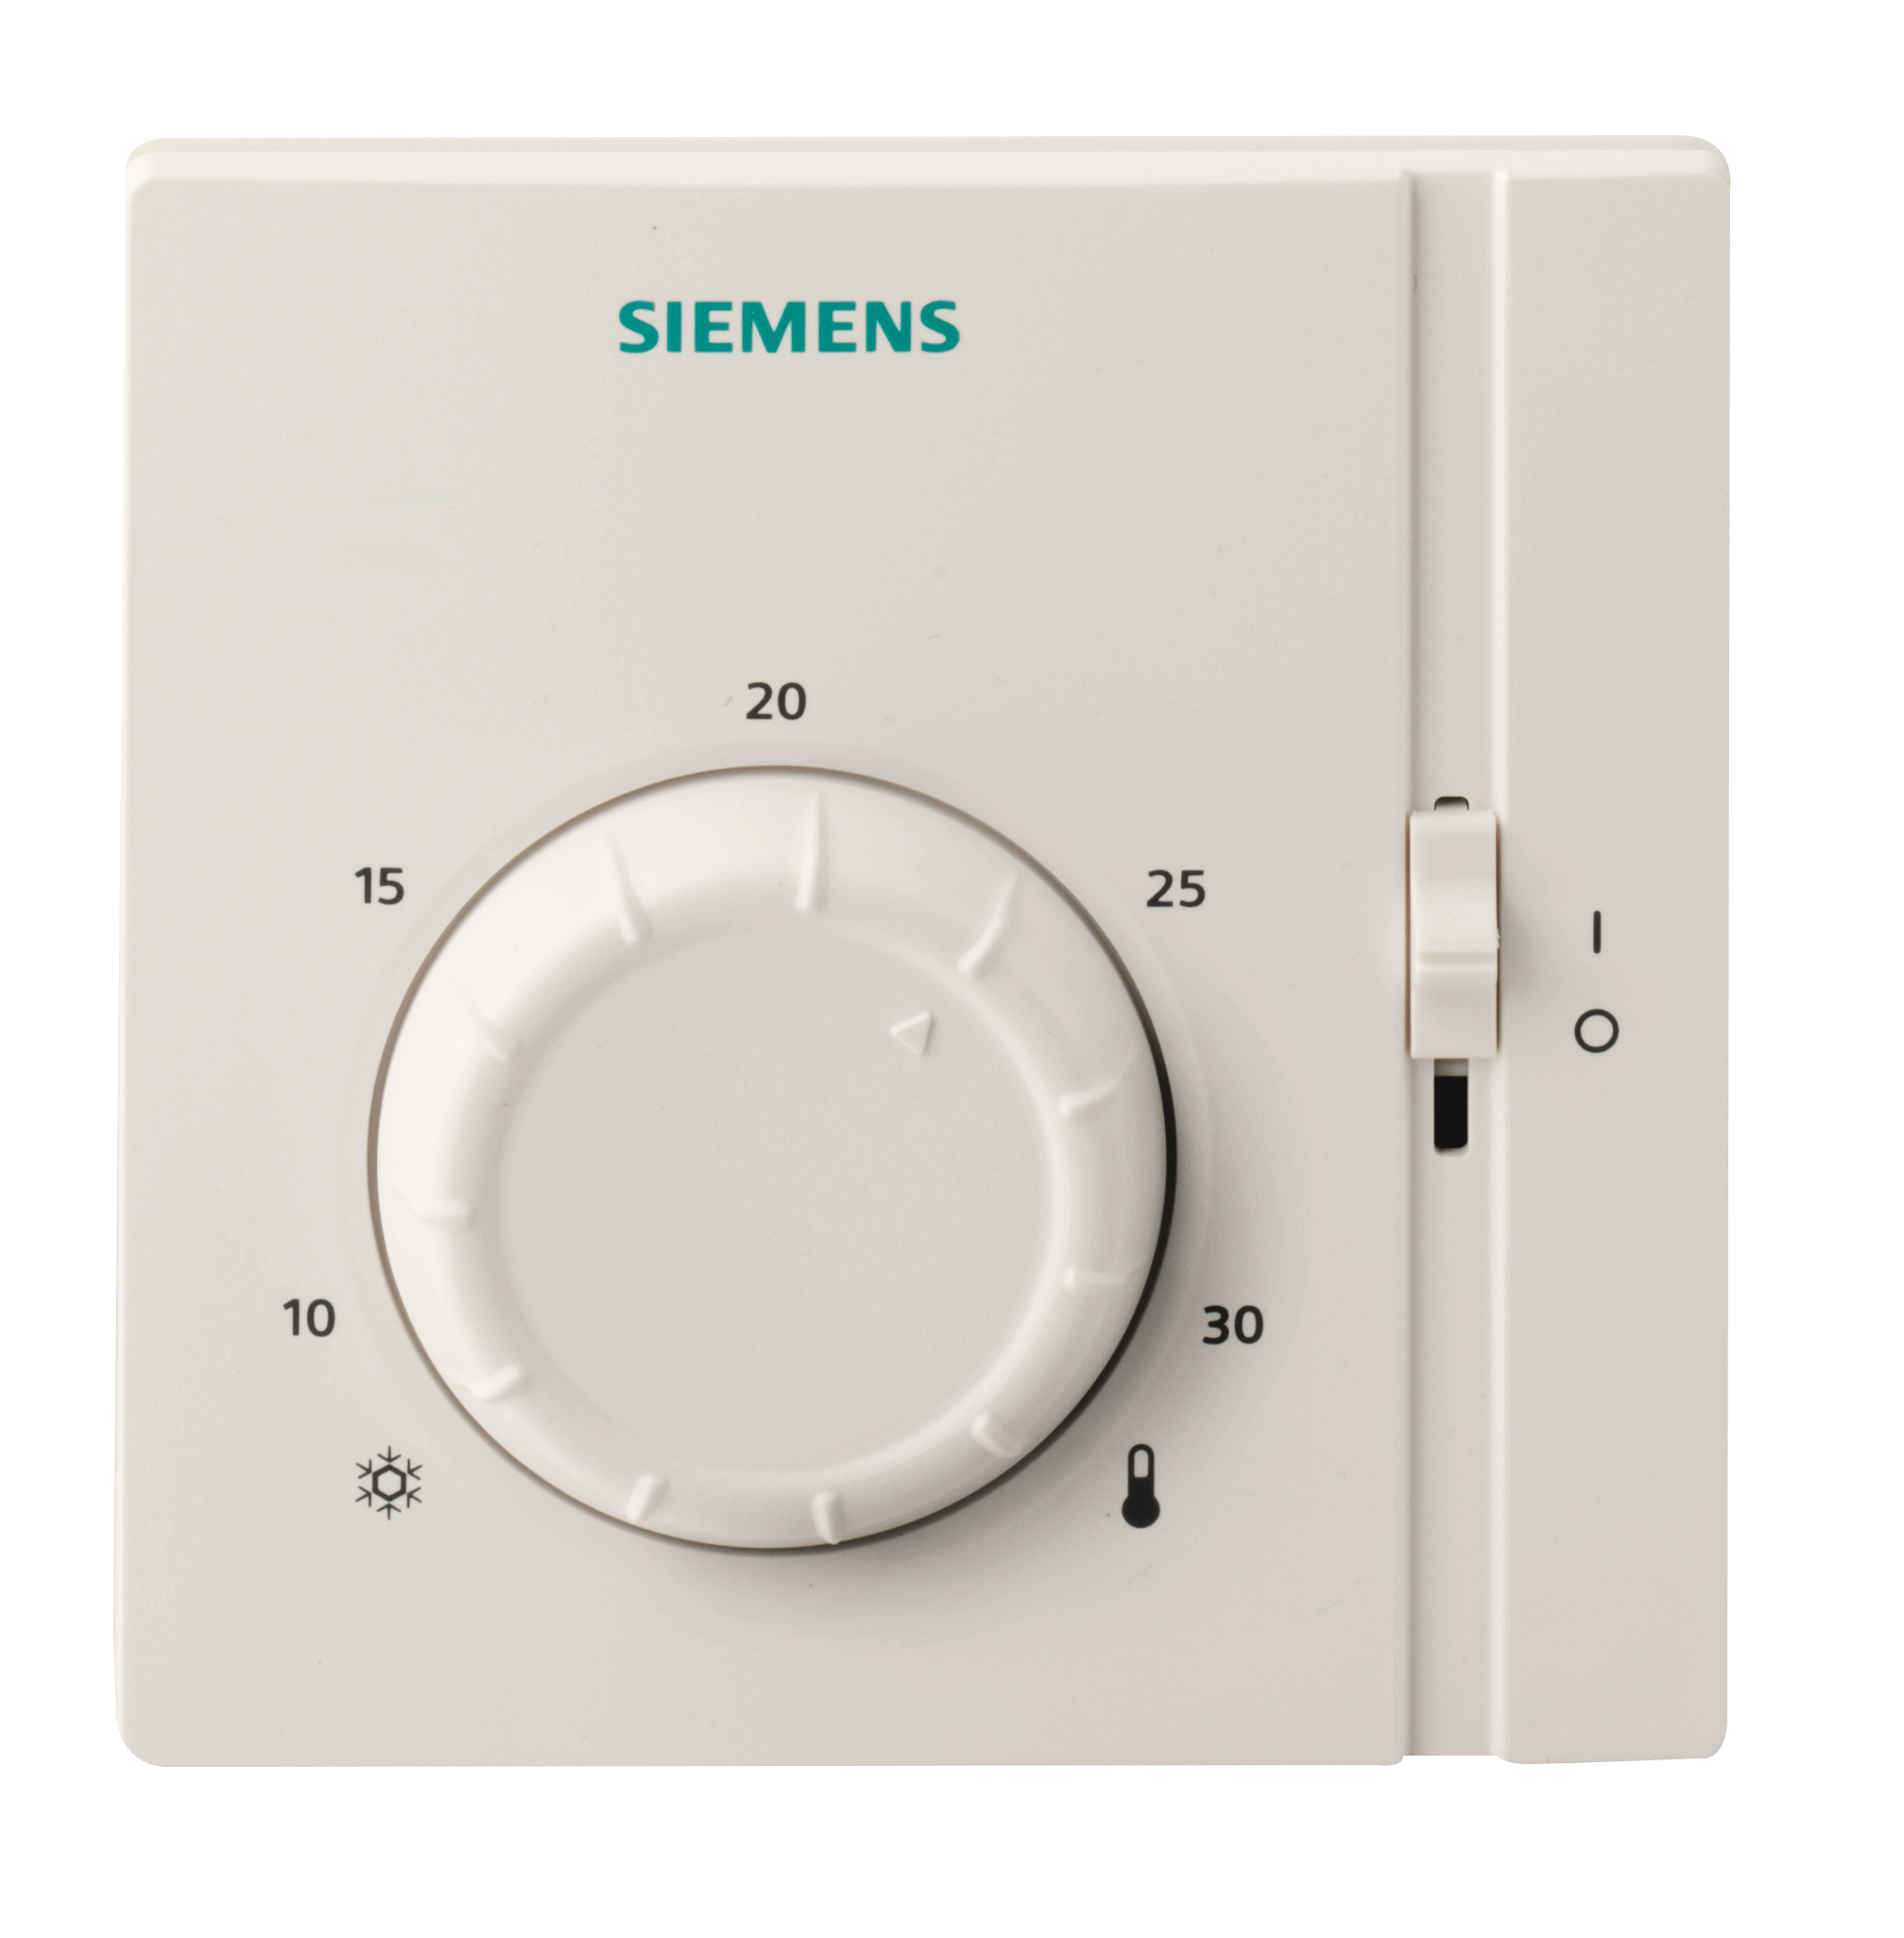 Leroy Merlin: termostatos inteligentes que reducen el consumo de